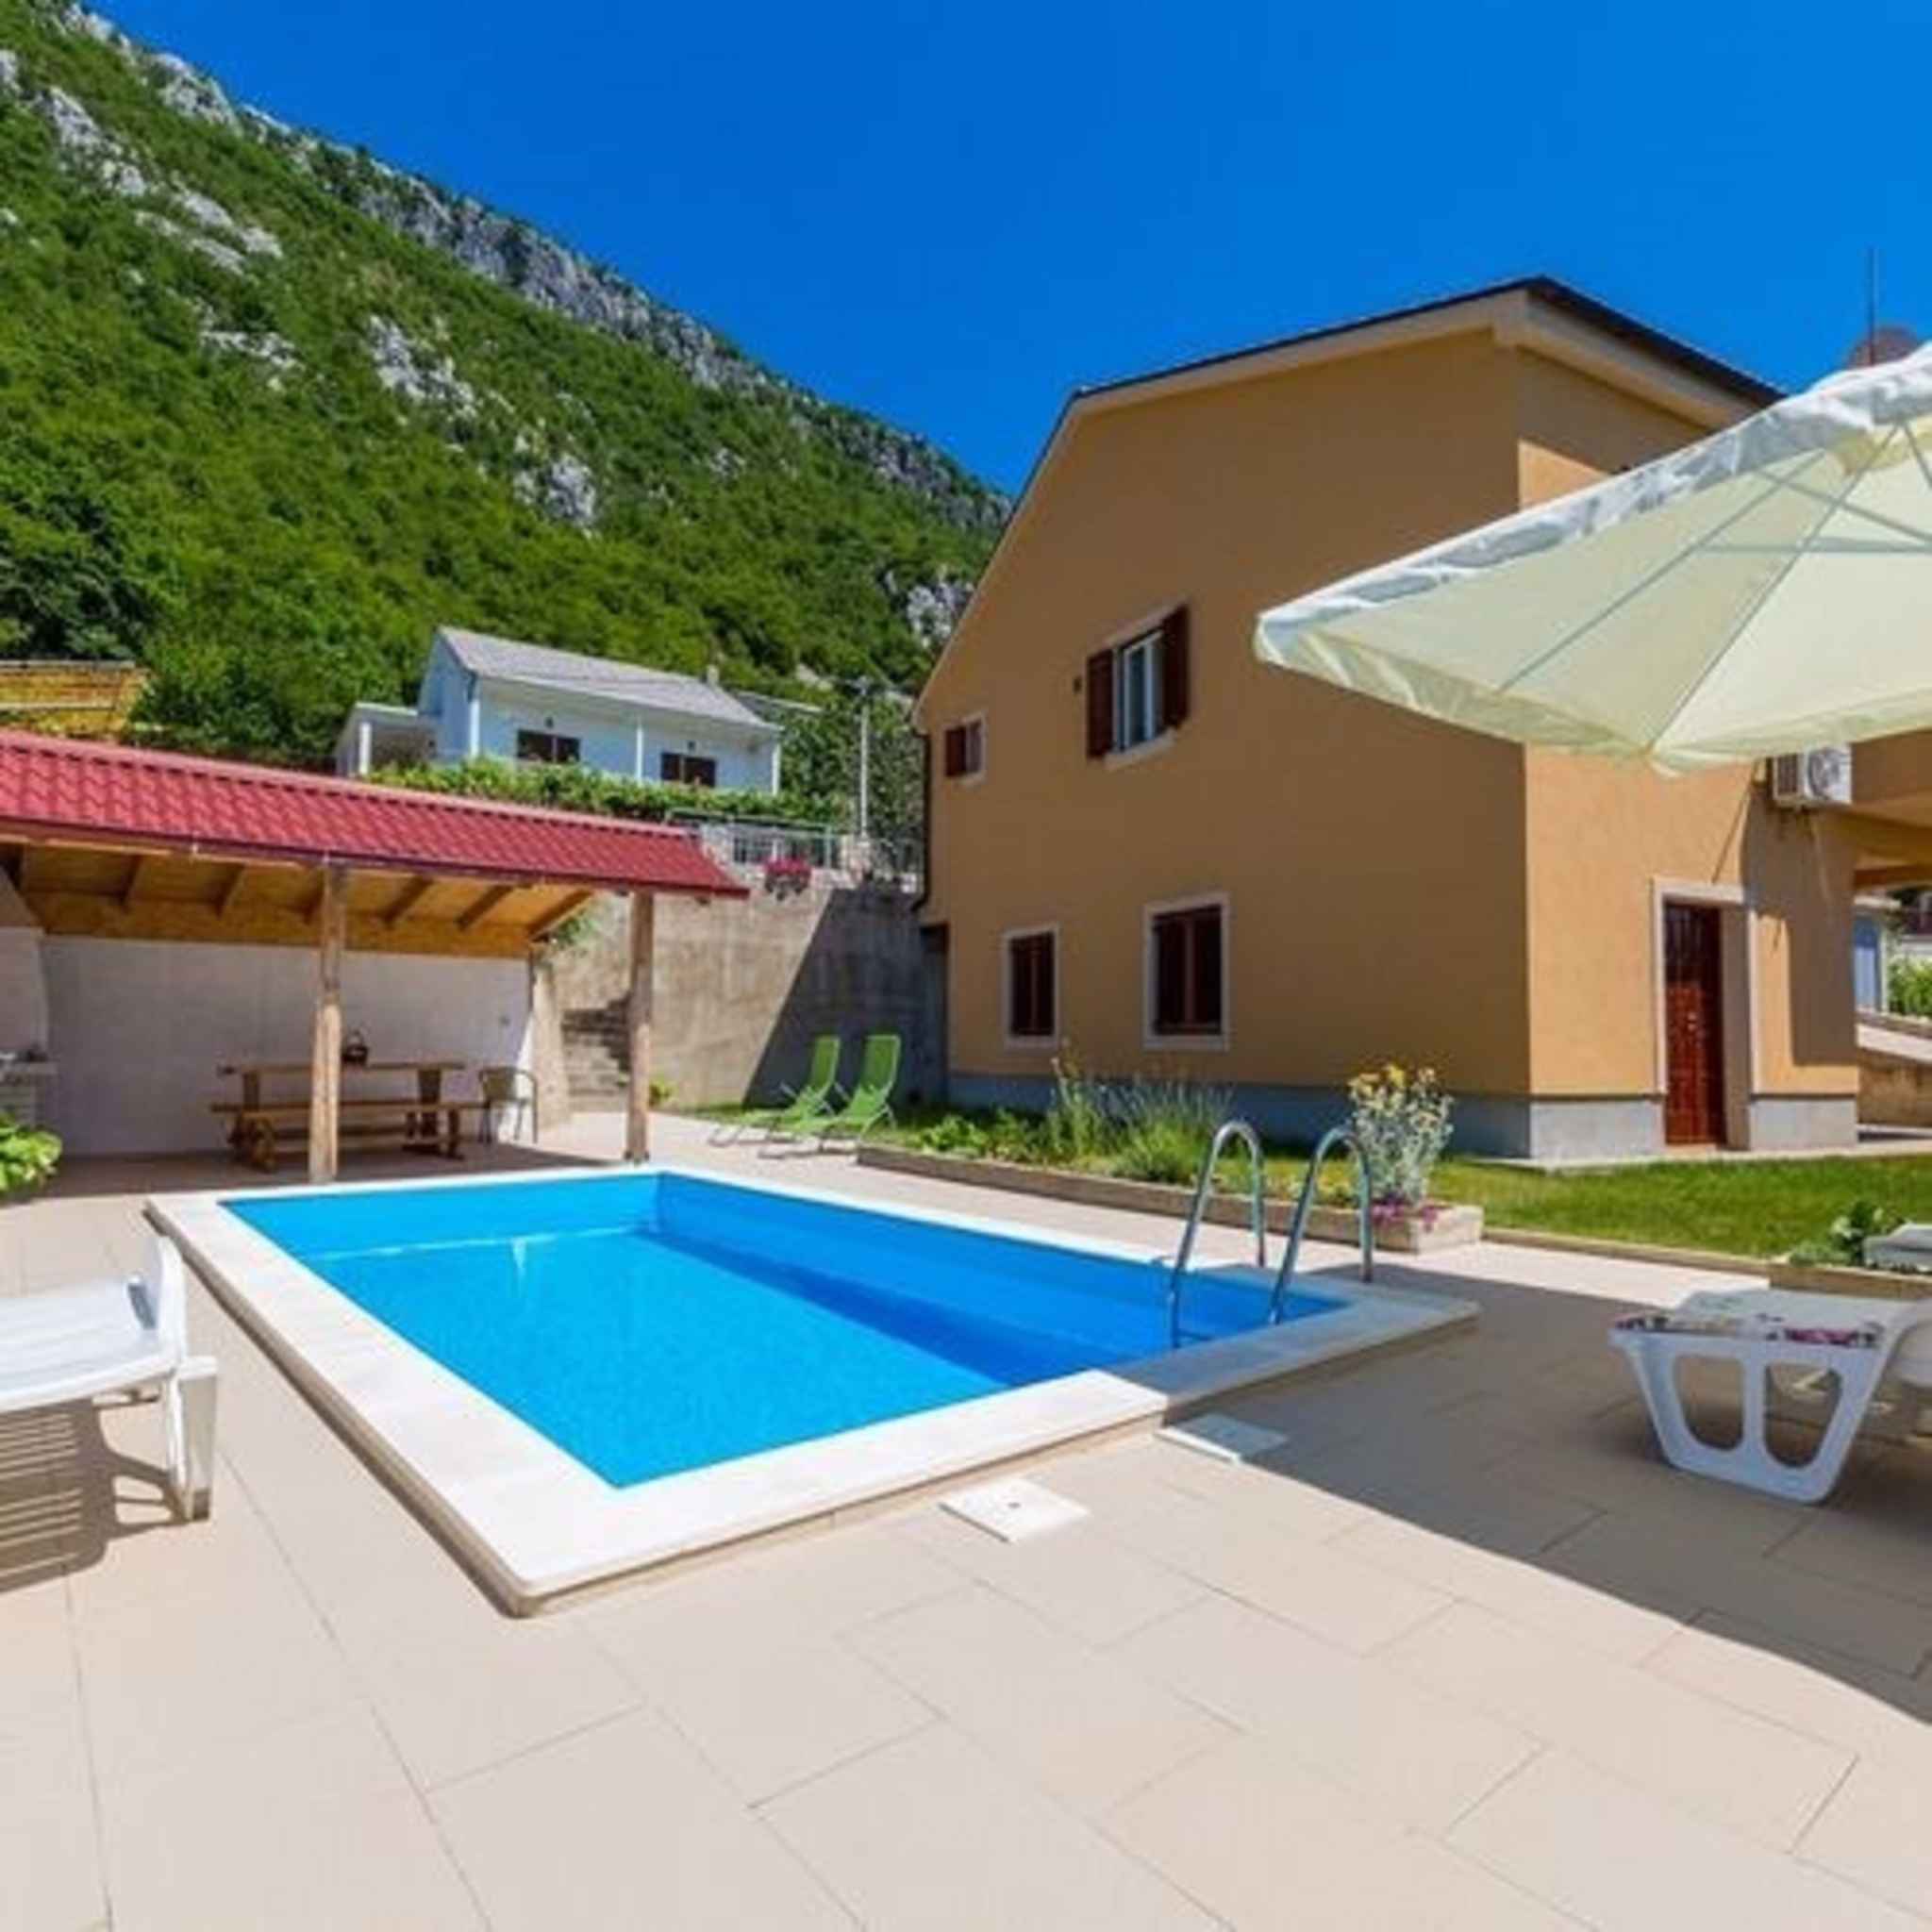 Ferienhaus mit Meerwasser - Pool Ferienhaus in Kroatien